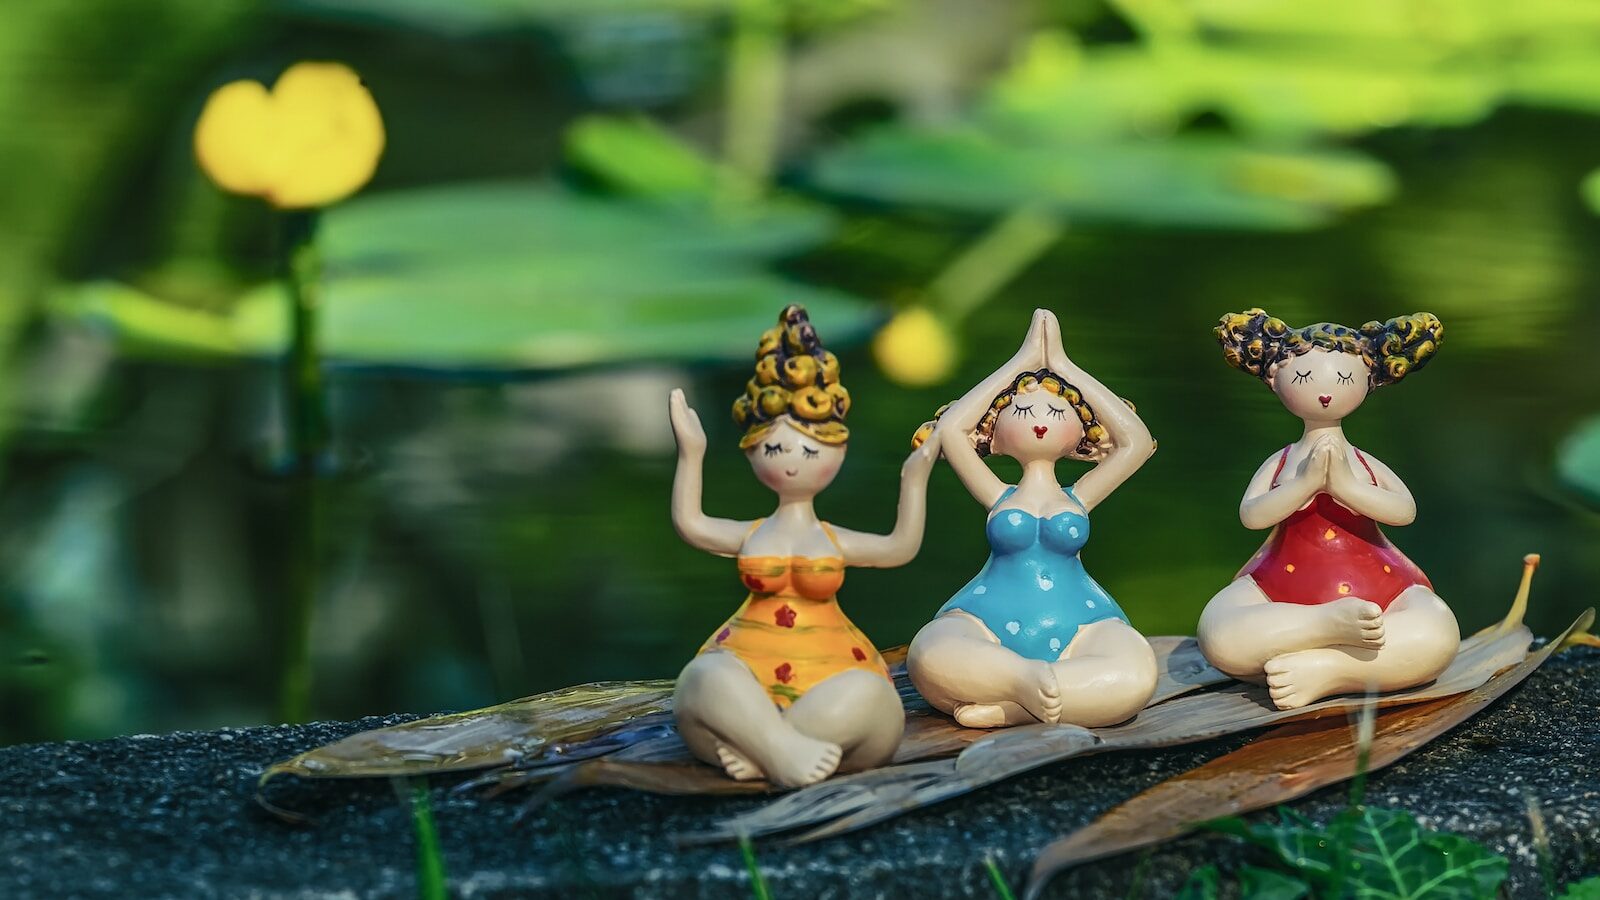 three little figurines are sitting on a leaf